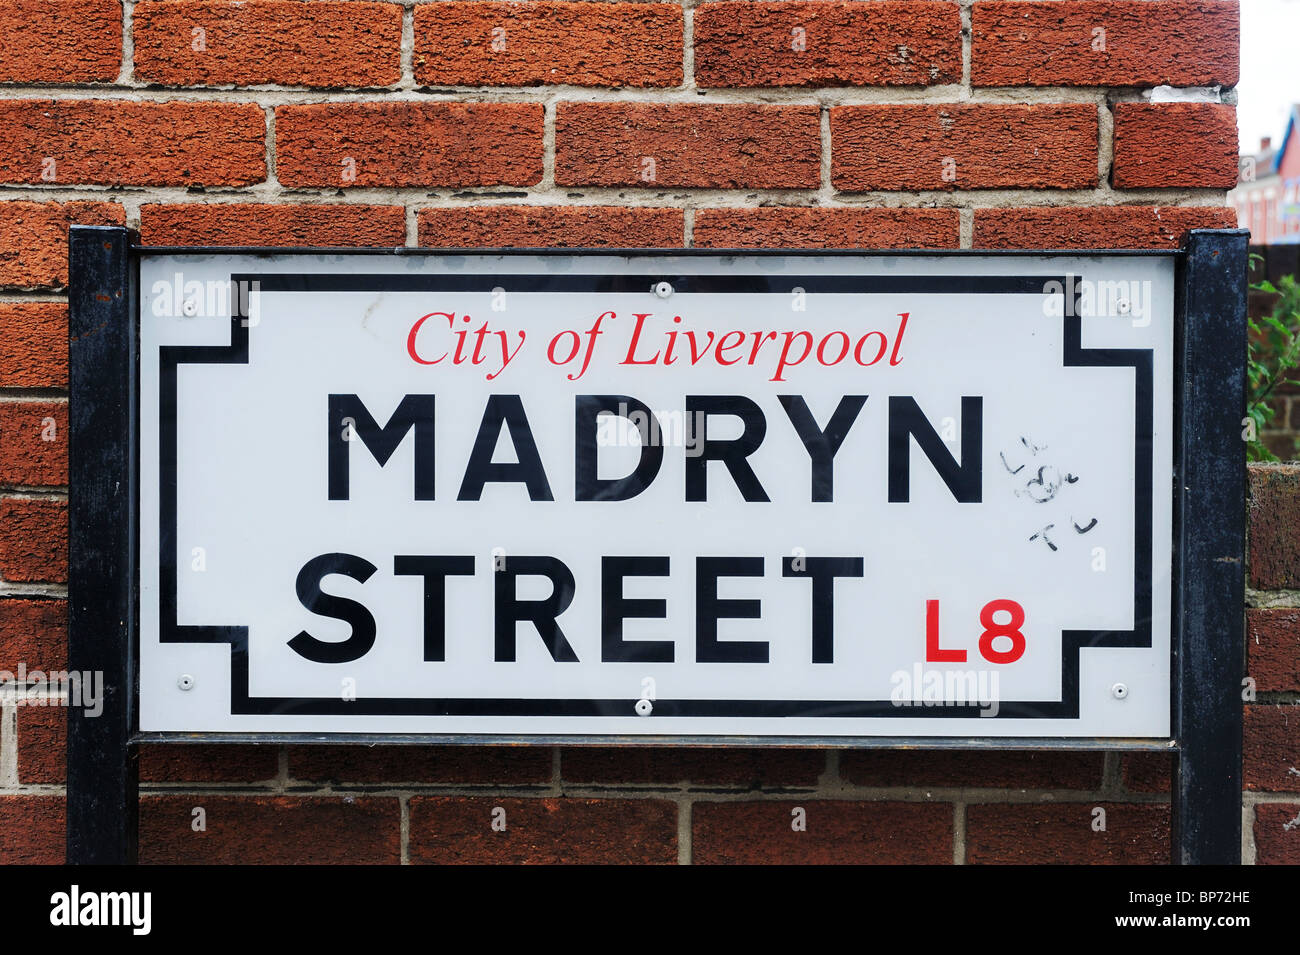 Straßenname Zeichen für Madryn Street, Dingle, Liverpool. Der Beatles-Schlagzeuger Ringo Starr, geboren in Nummer 9 Madryn Street. Stockfoto